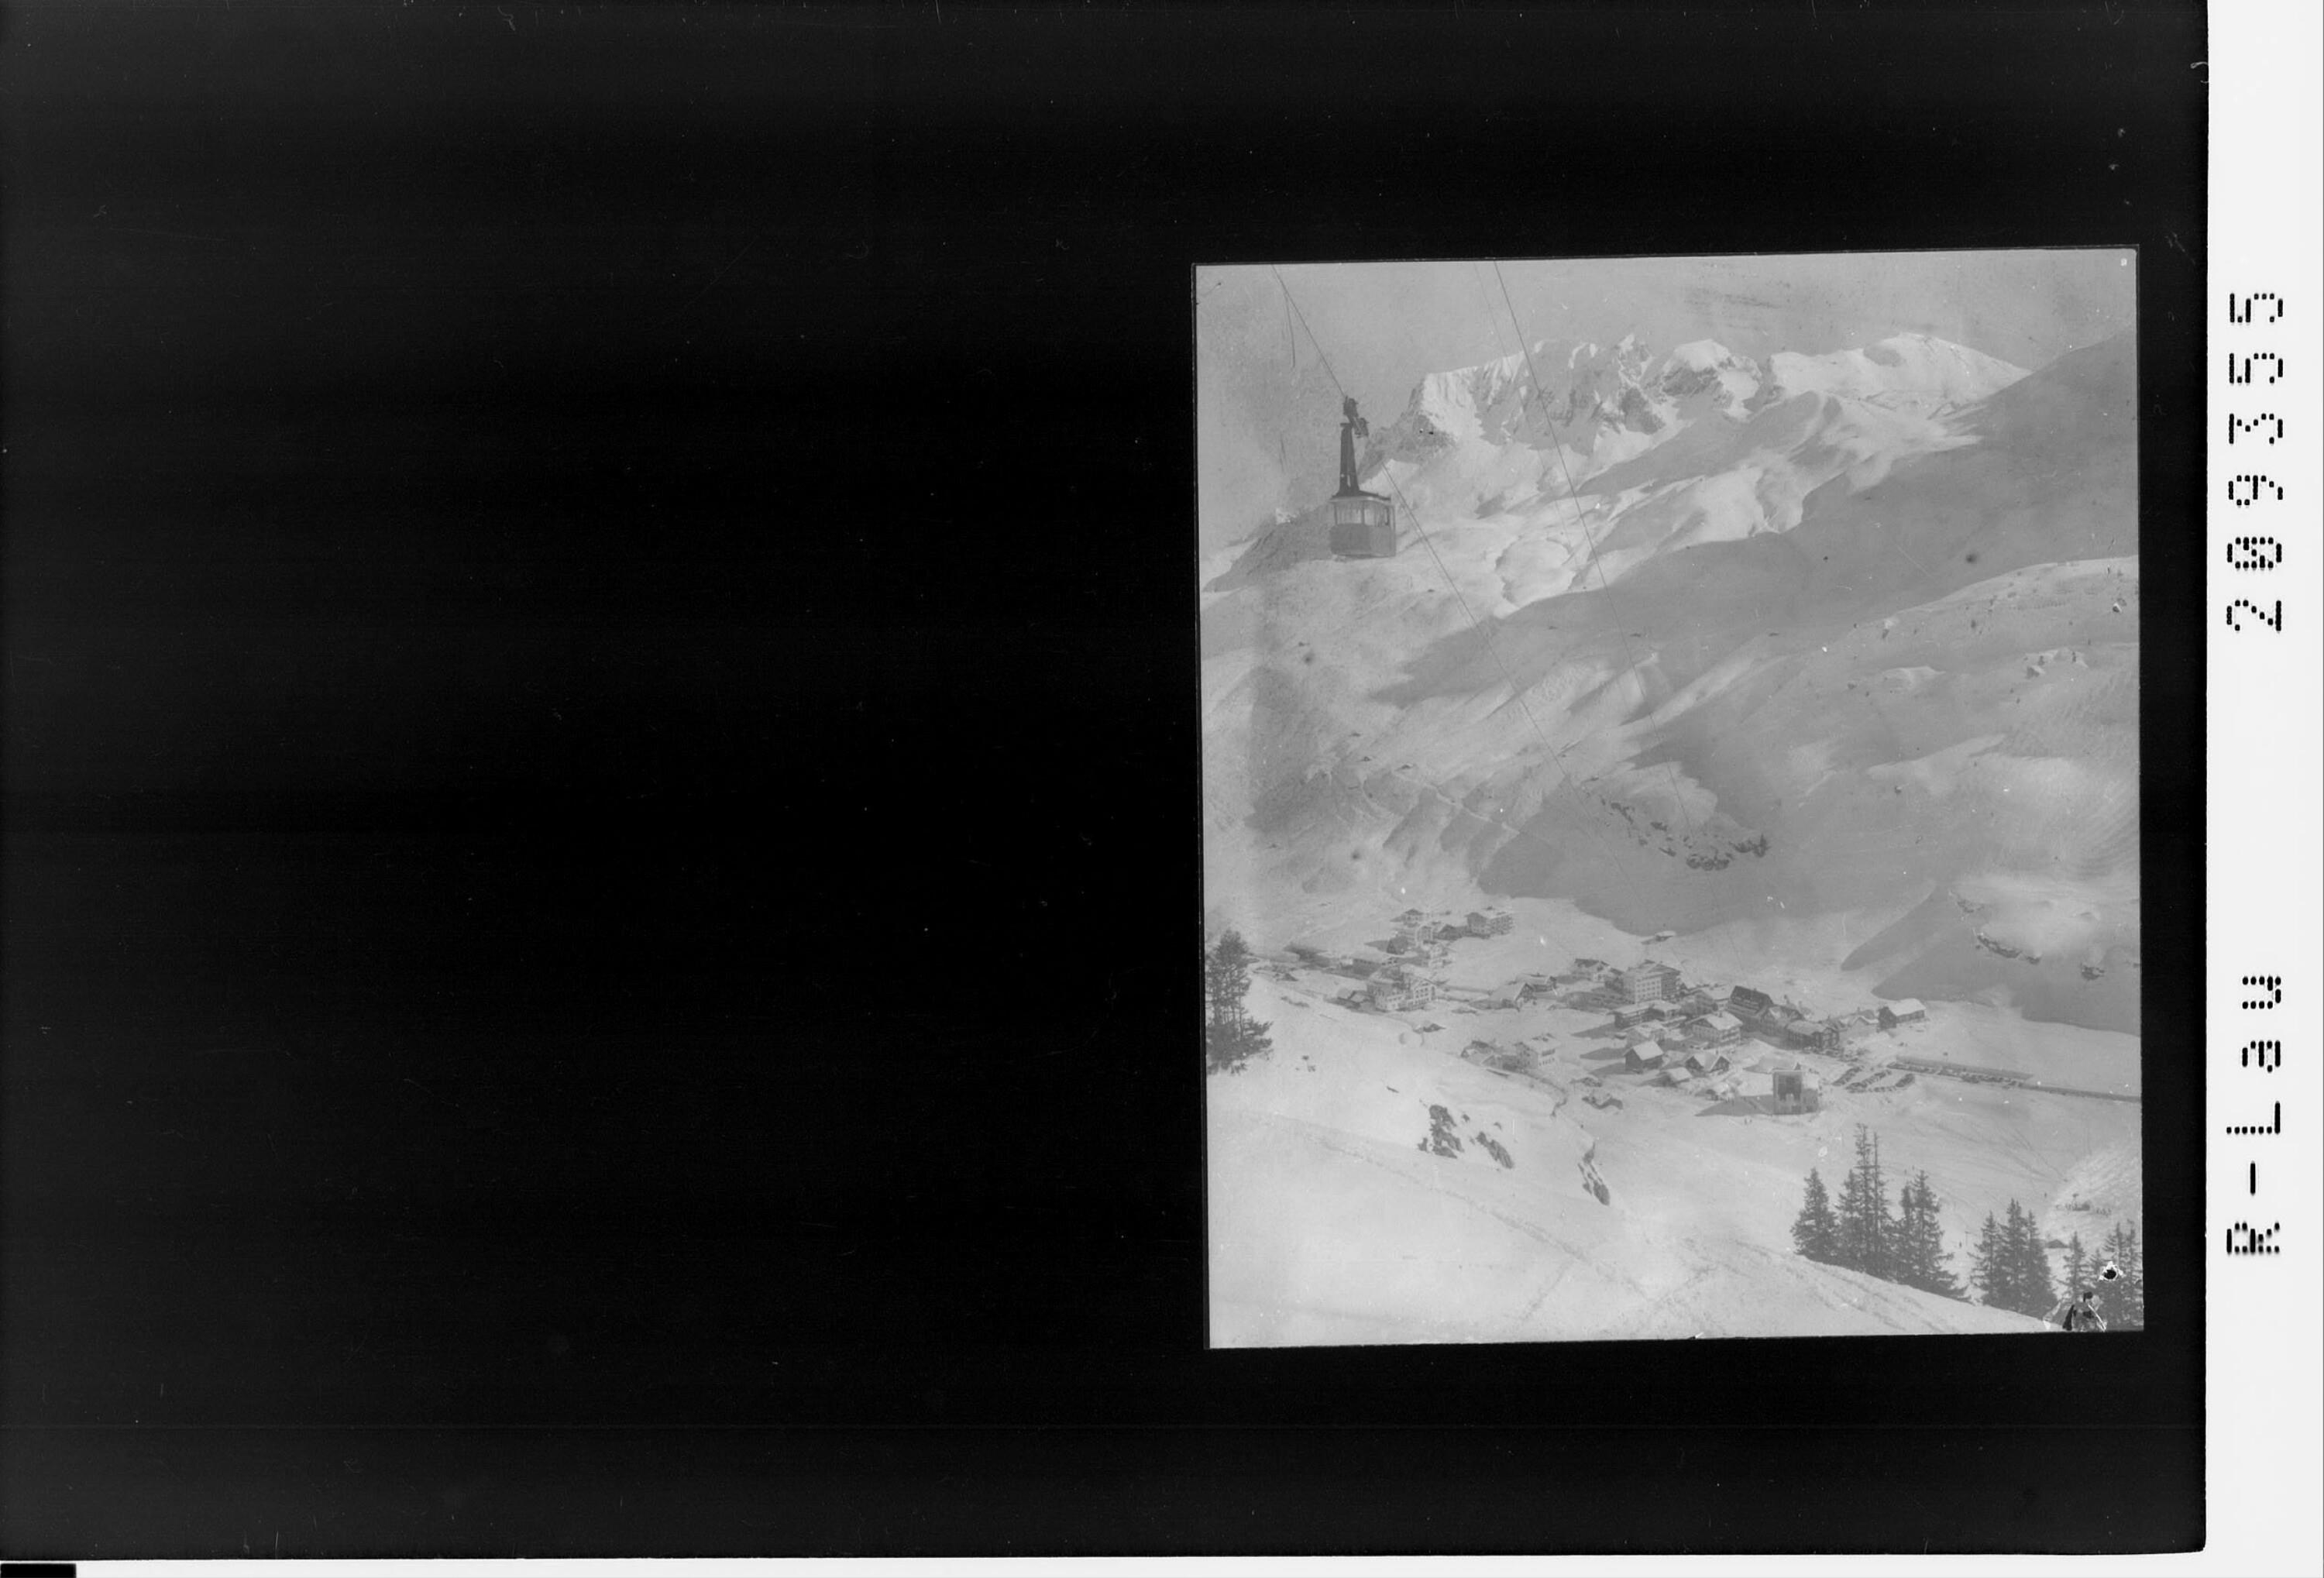 Zürs am Arlberg 1720 m mit Trittkopfseilbahn></div>


    <hr>
    <div class=